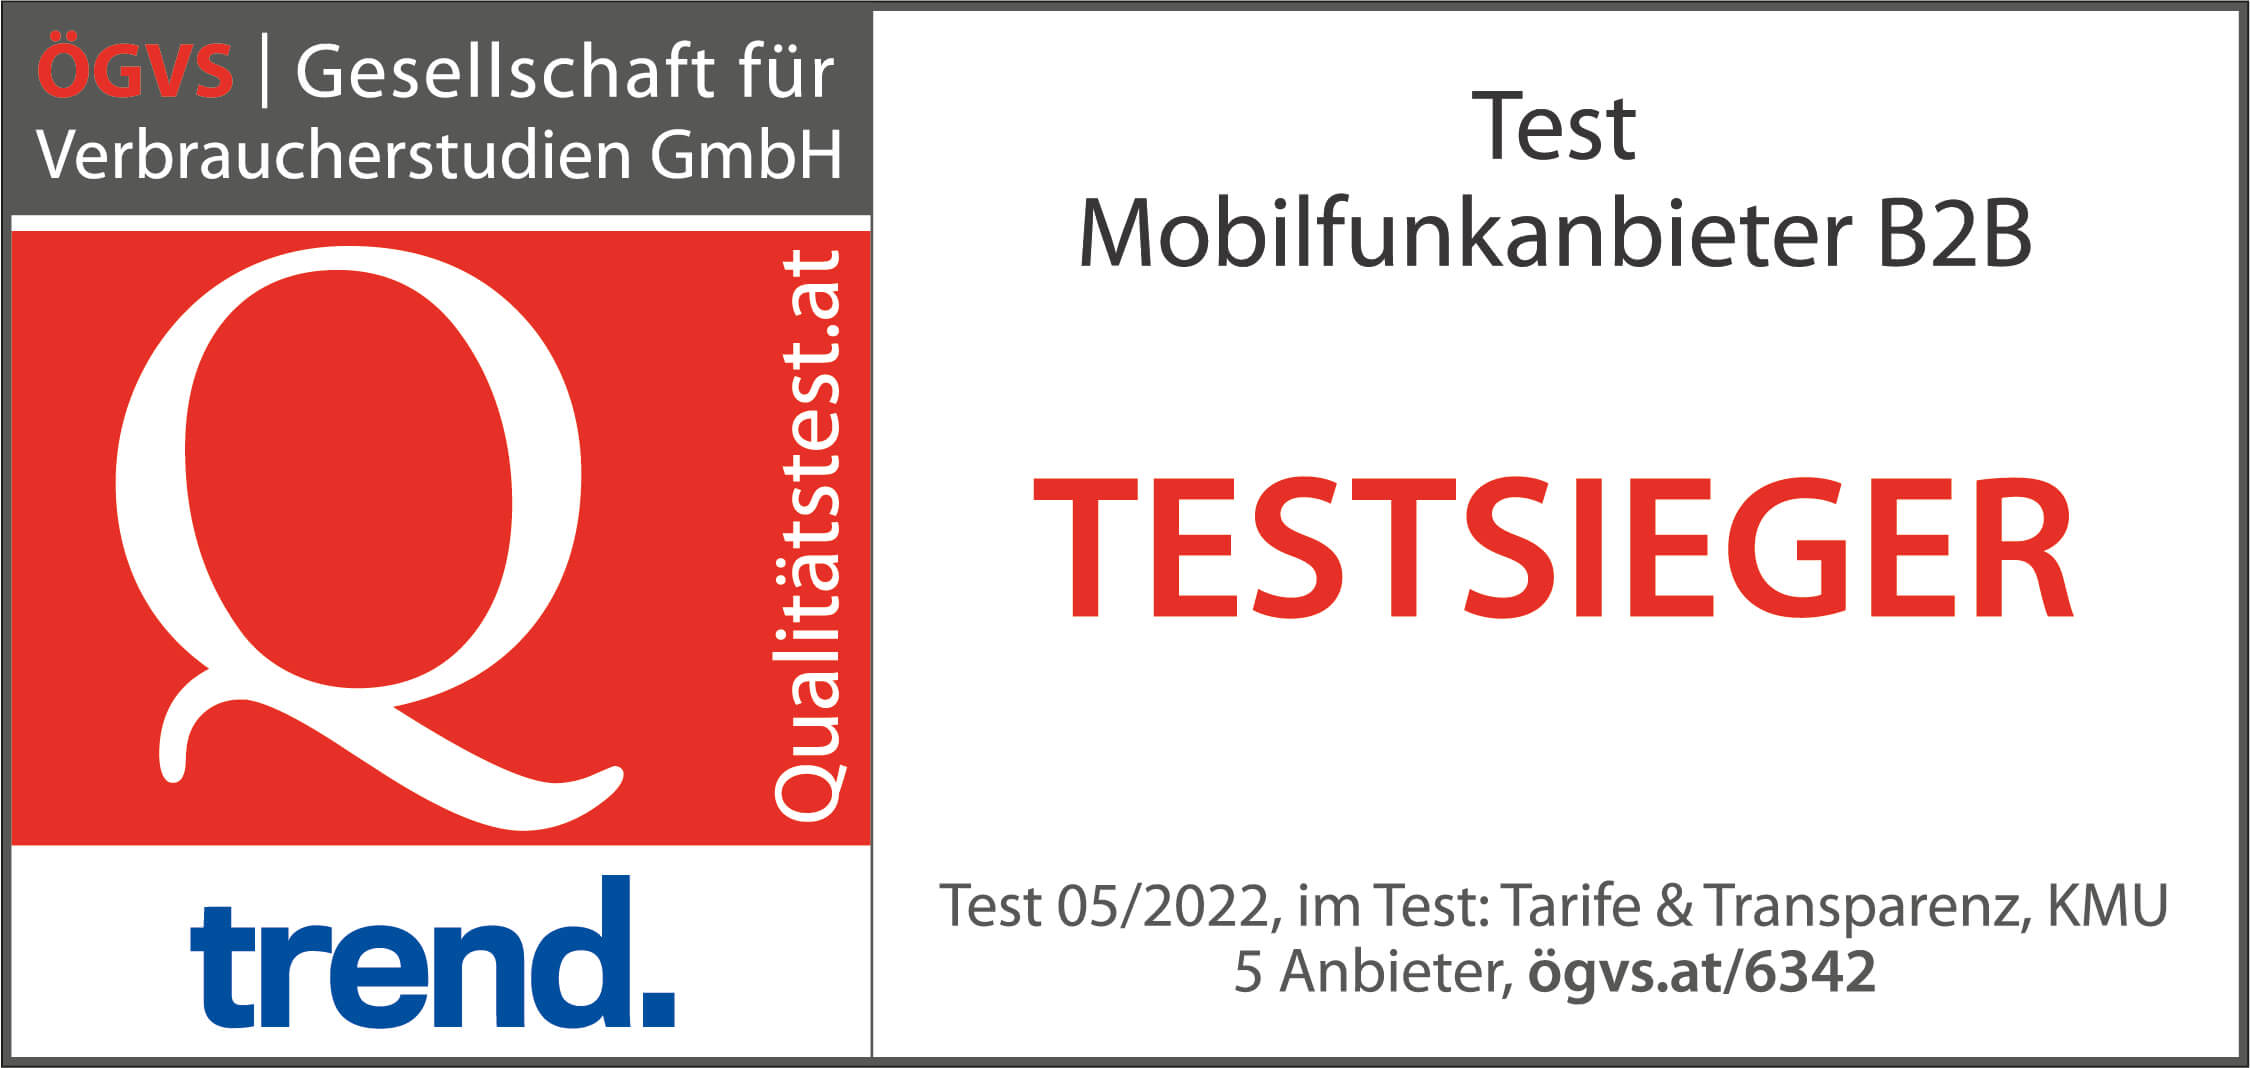 ÖGVS Testsieger 2022 Qualitätstest Mobilfunkanbeiter B2B